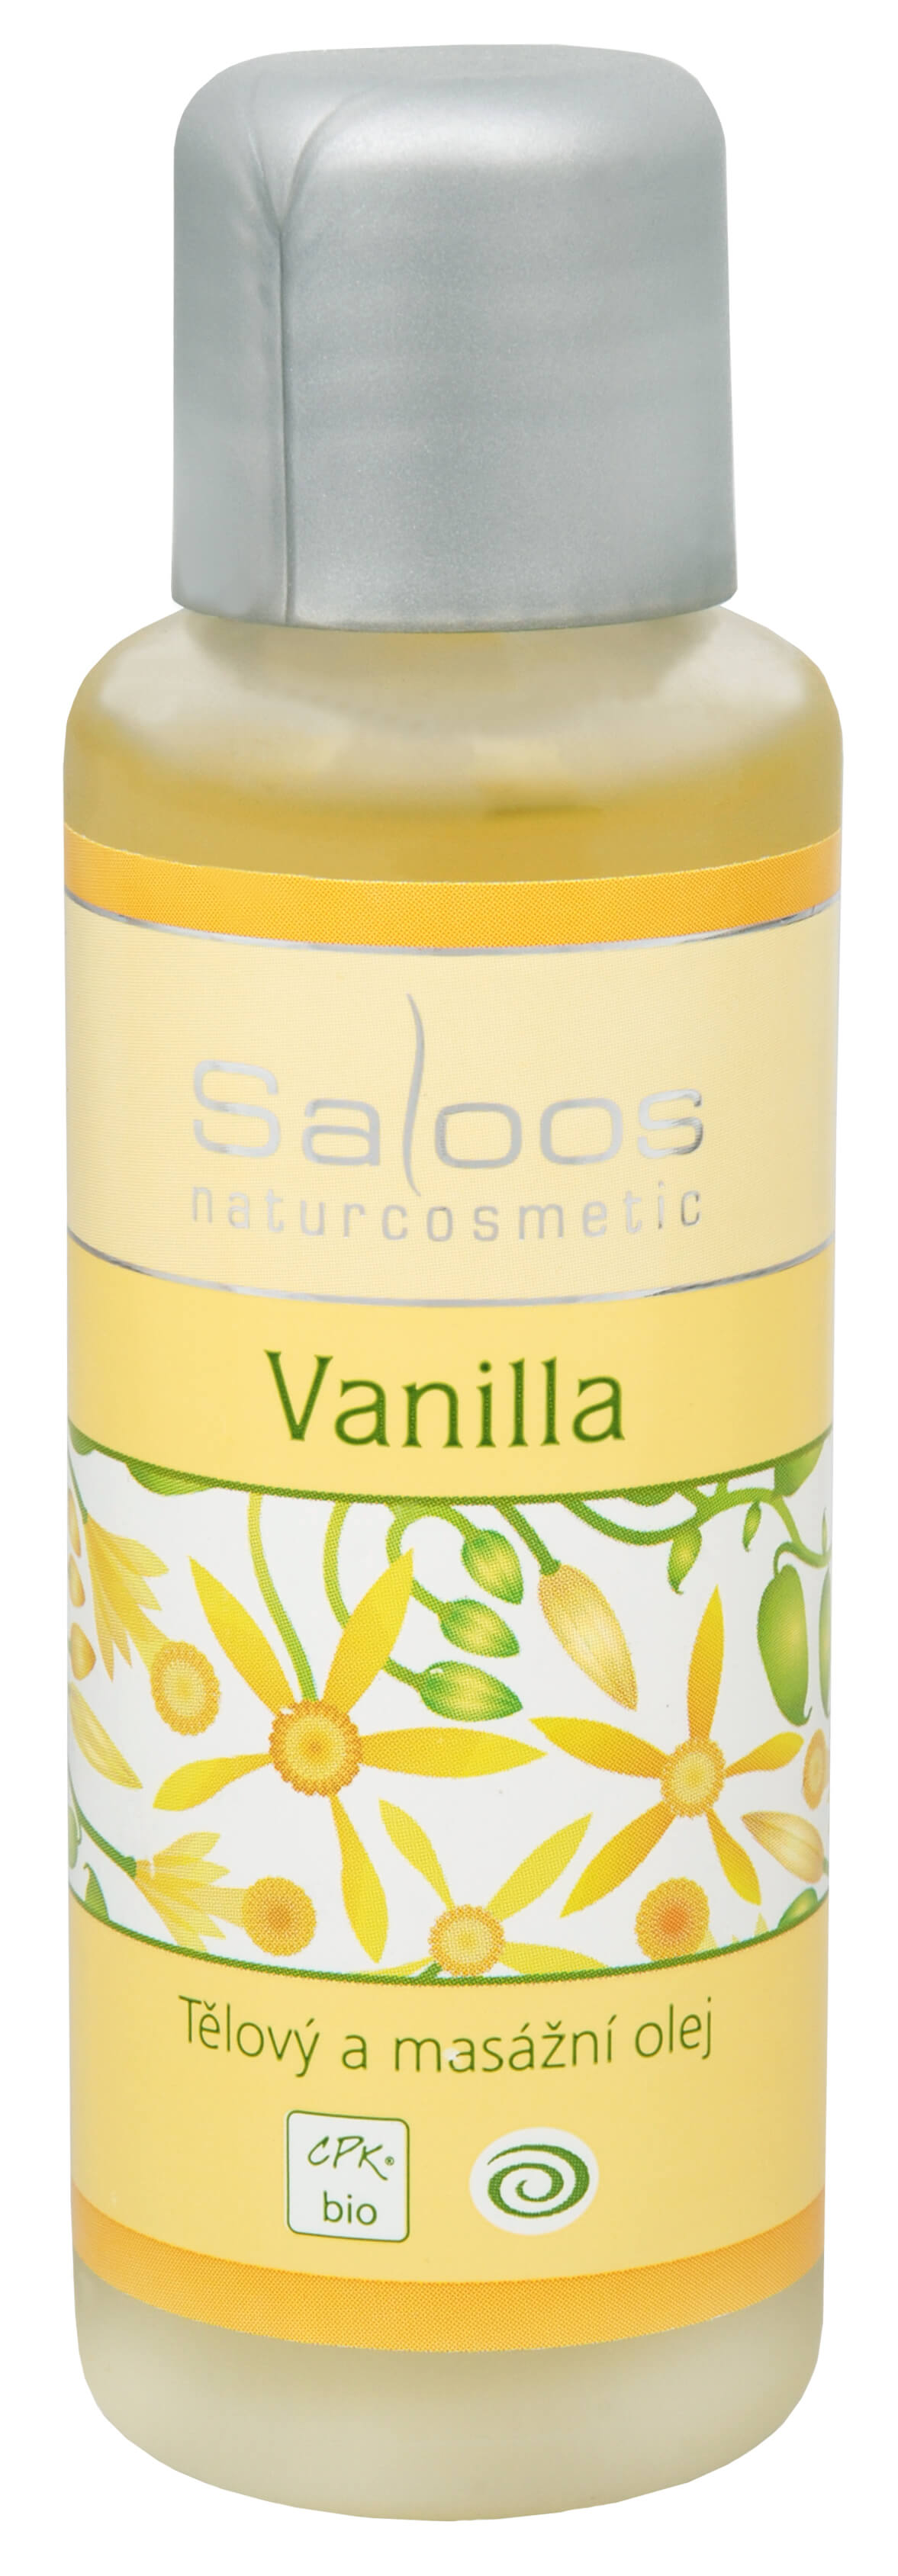 Zobrazit detail výrobku Saloos Bio tělový a masážní olej - Vanilla 50 ml